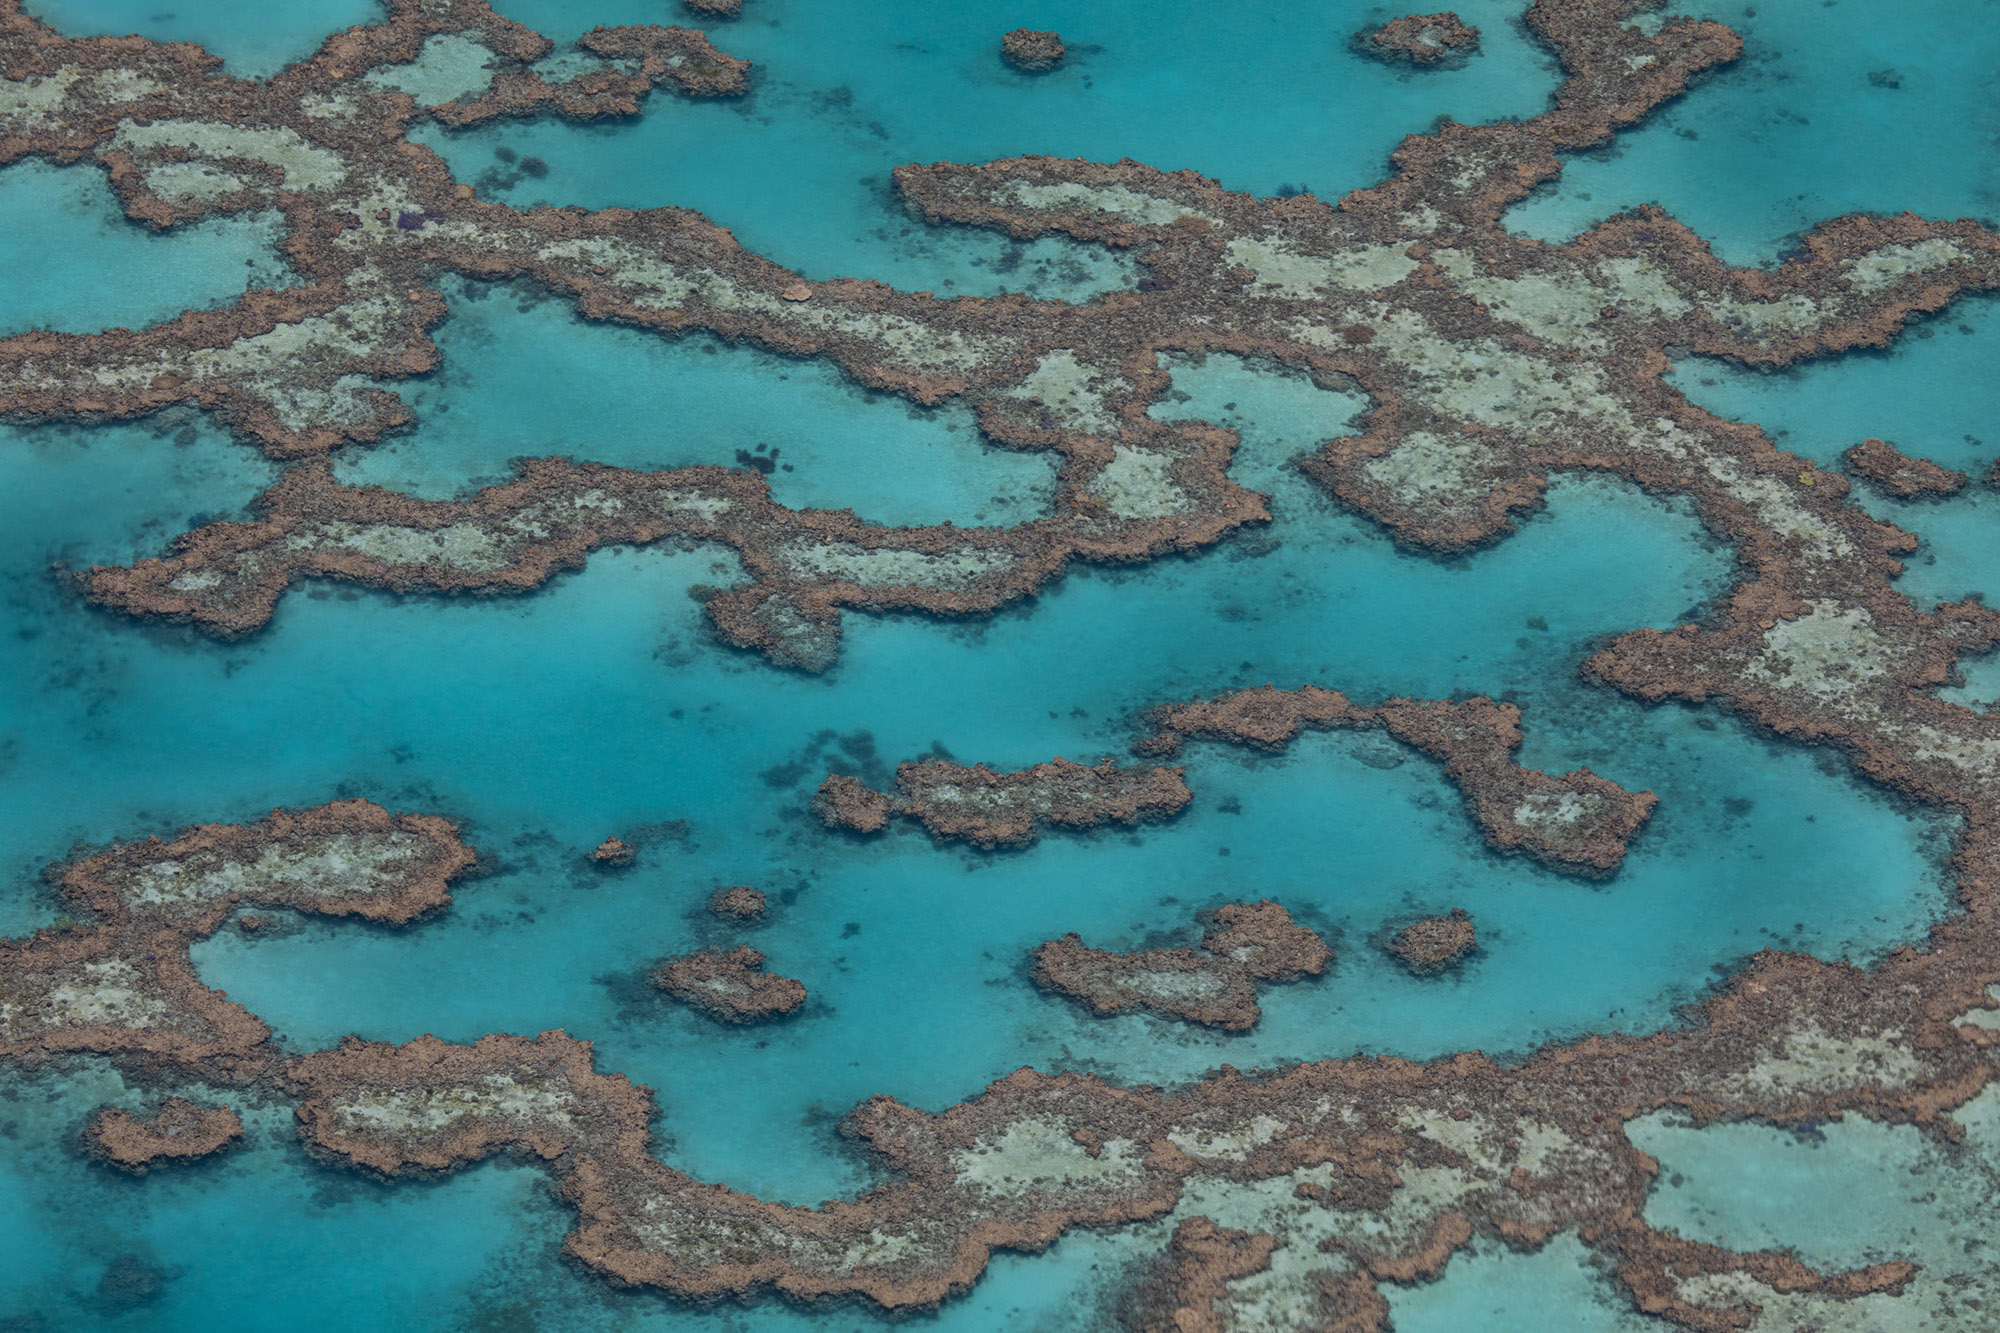 Australia, Great Barrier Reef (c) Bart Coolen 2019